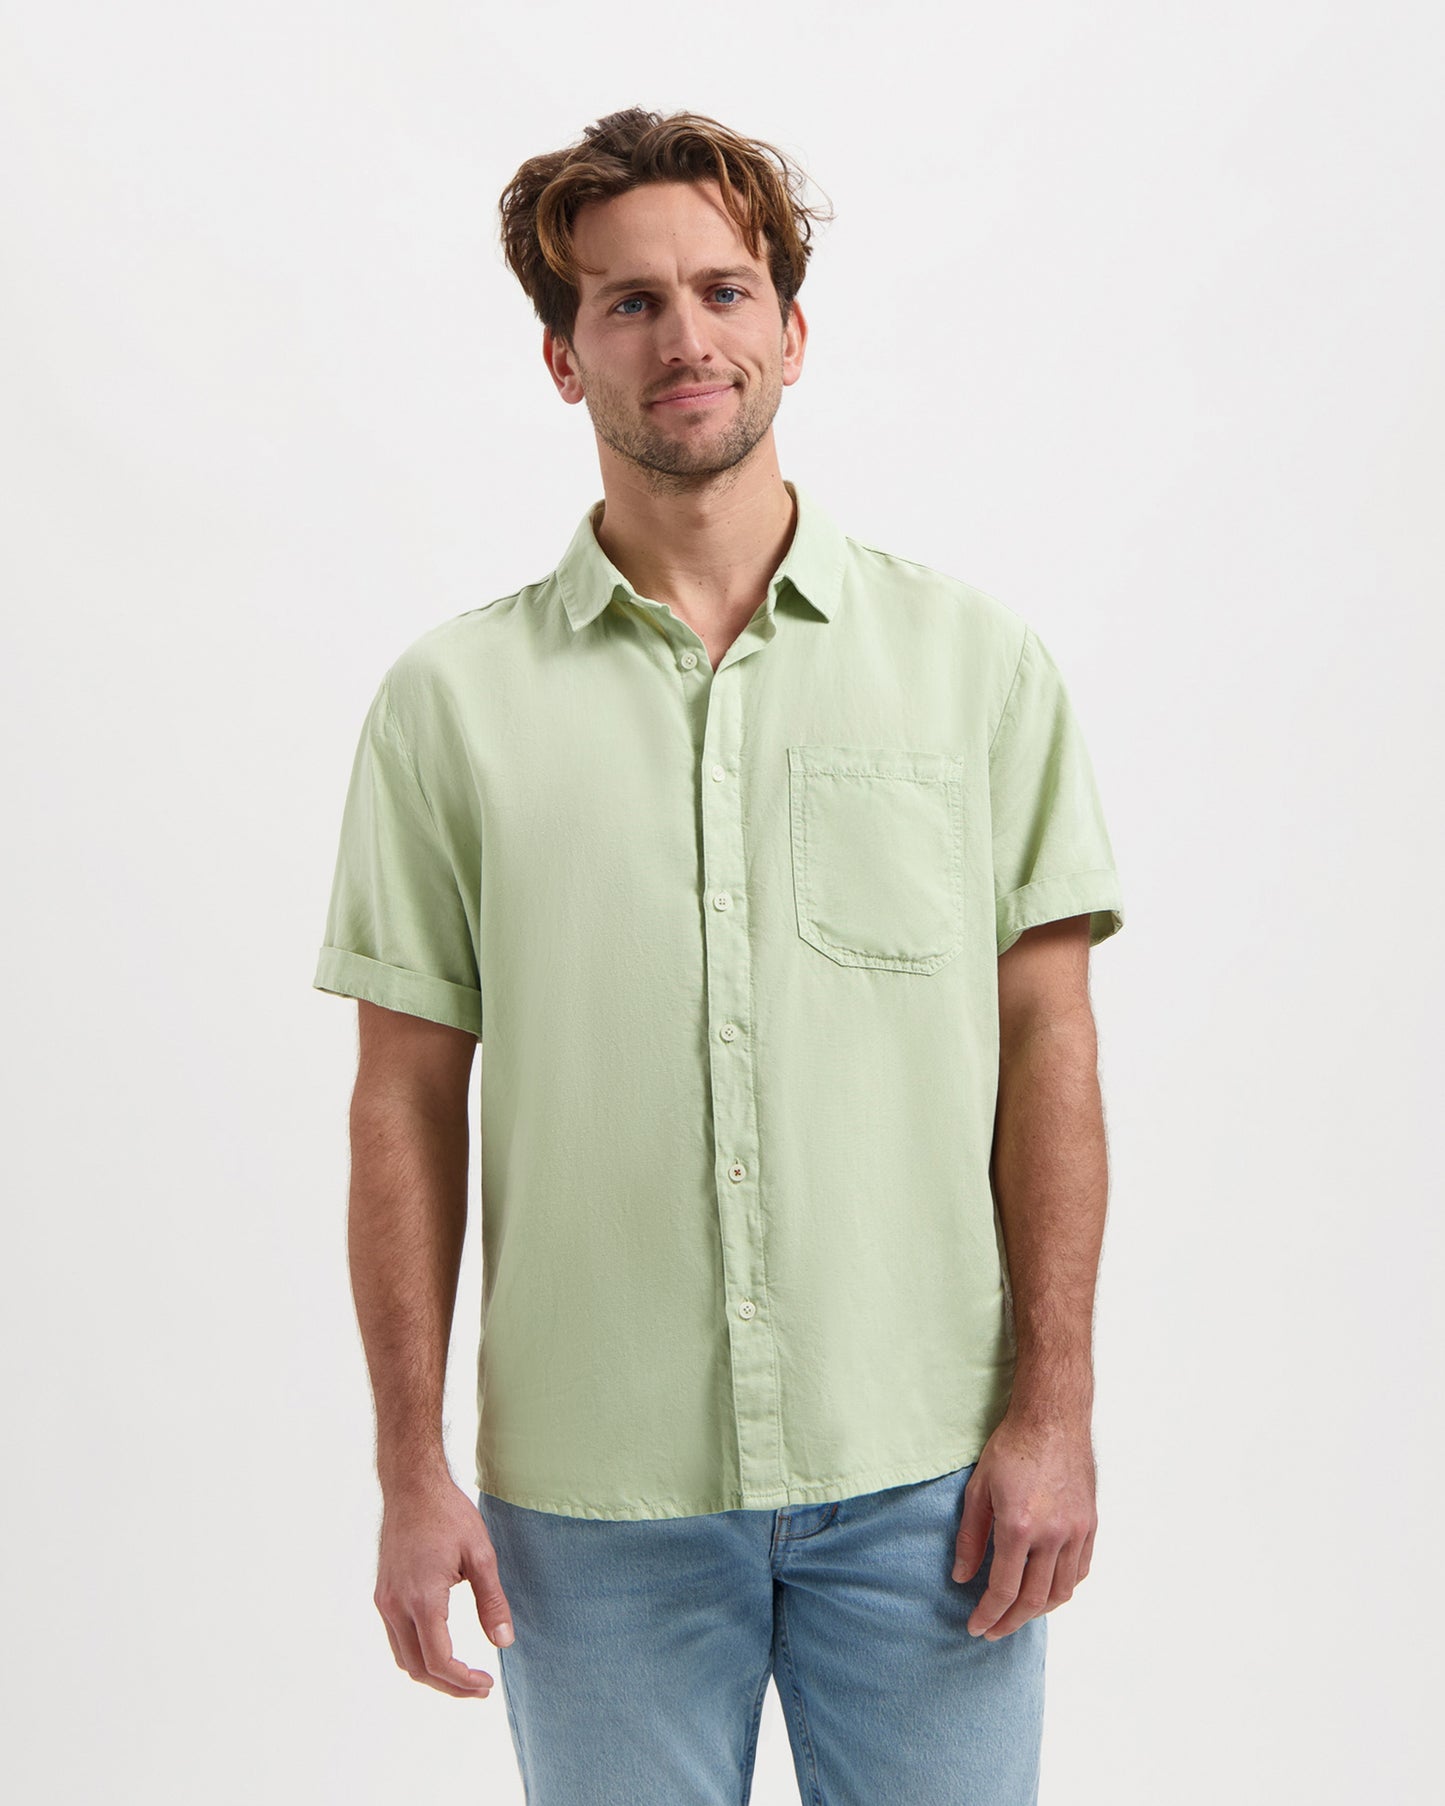 
                  
                    NOLAN Sage Green Shirt
                  
                